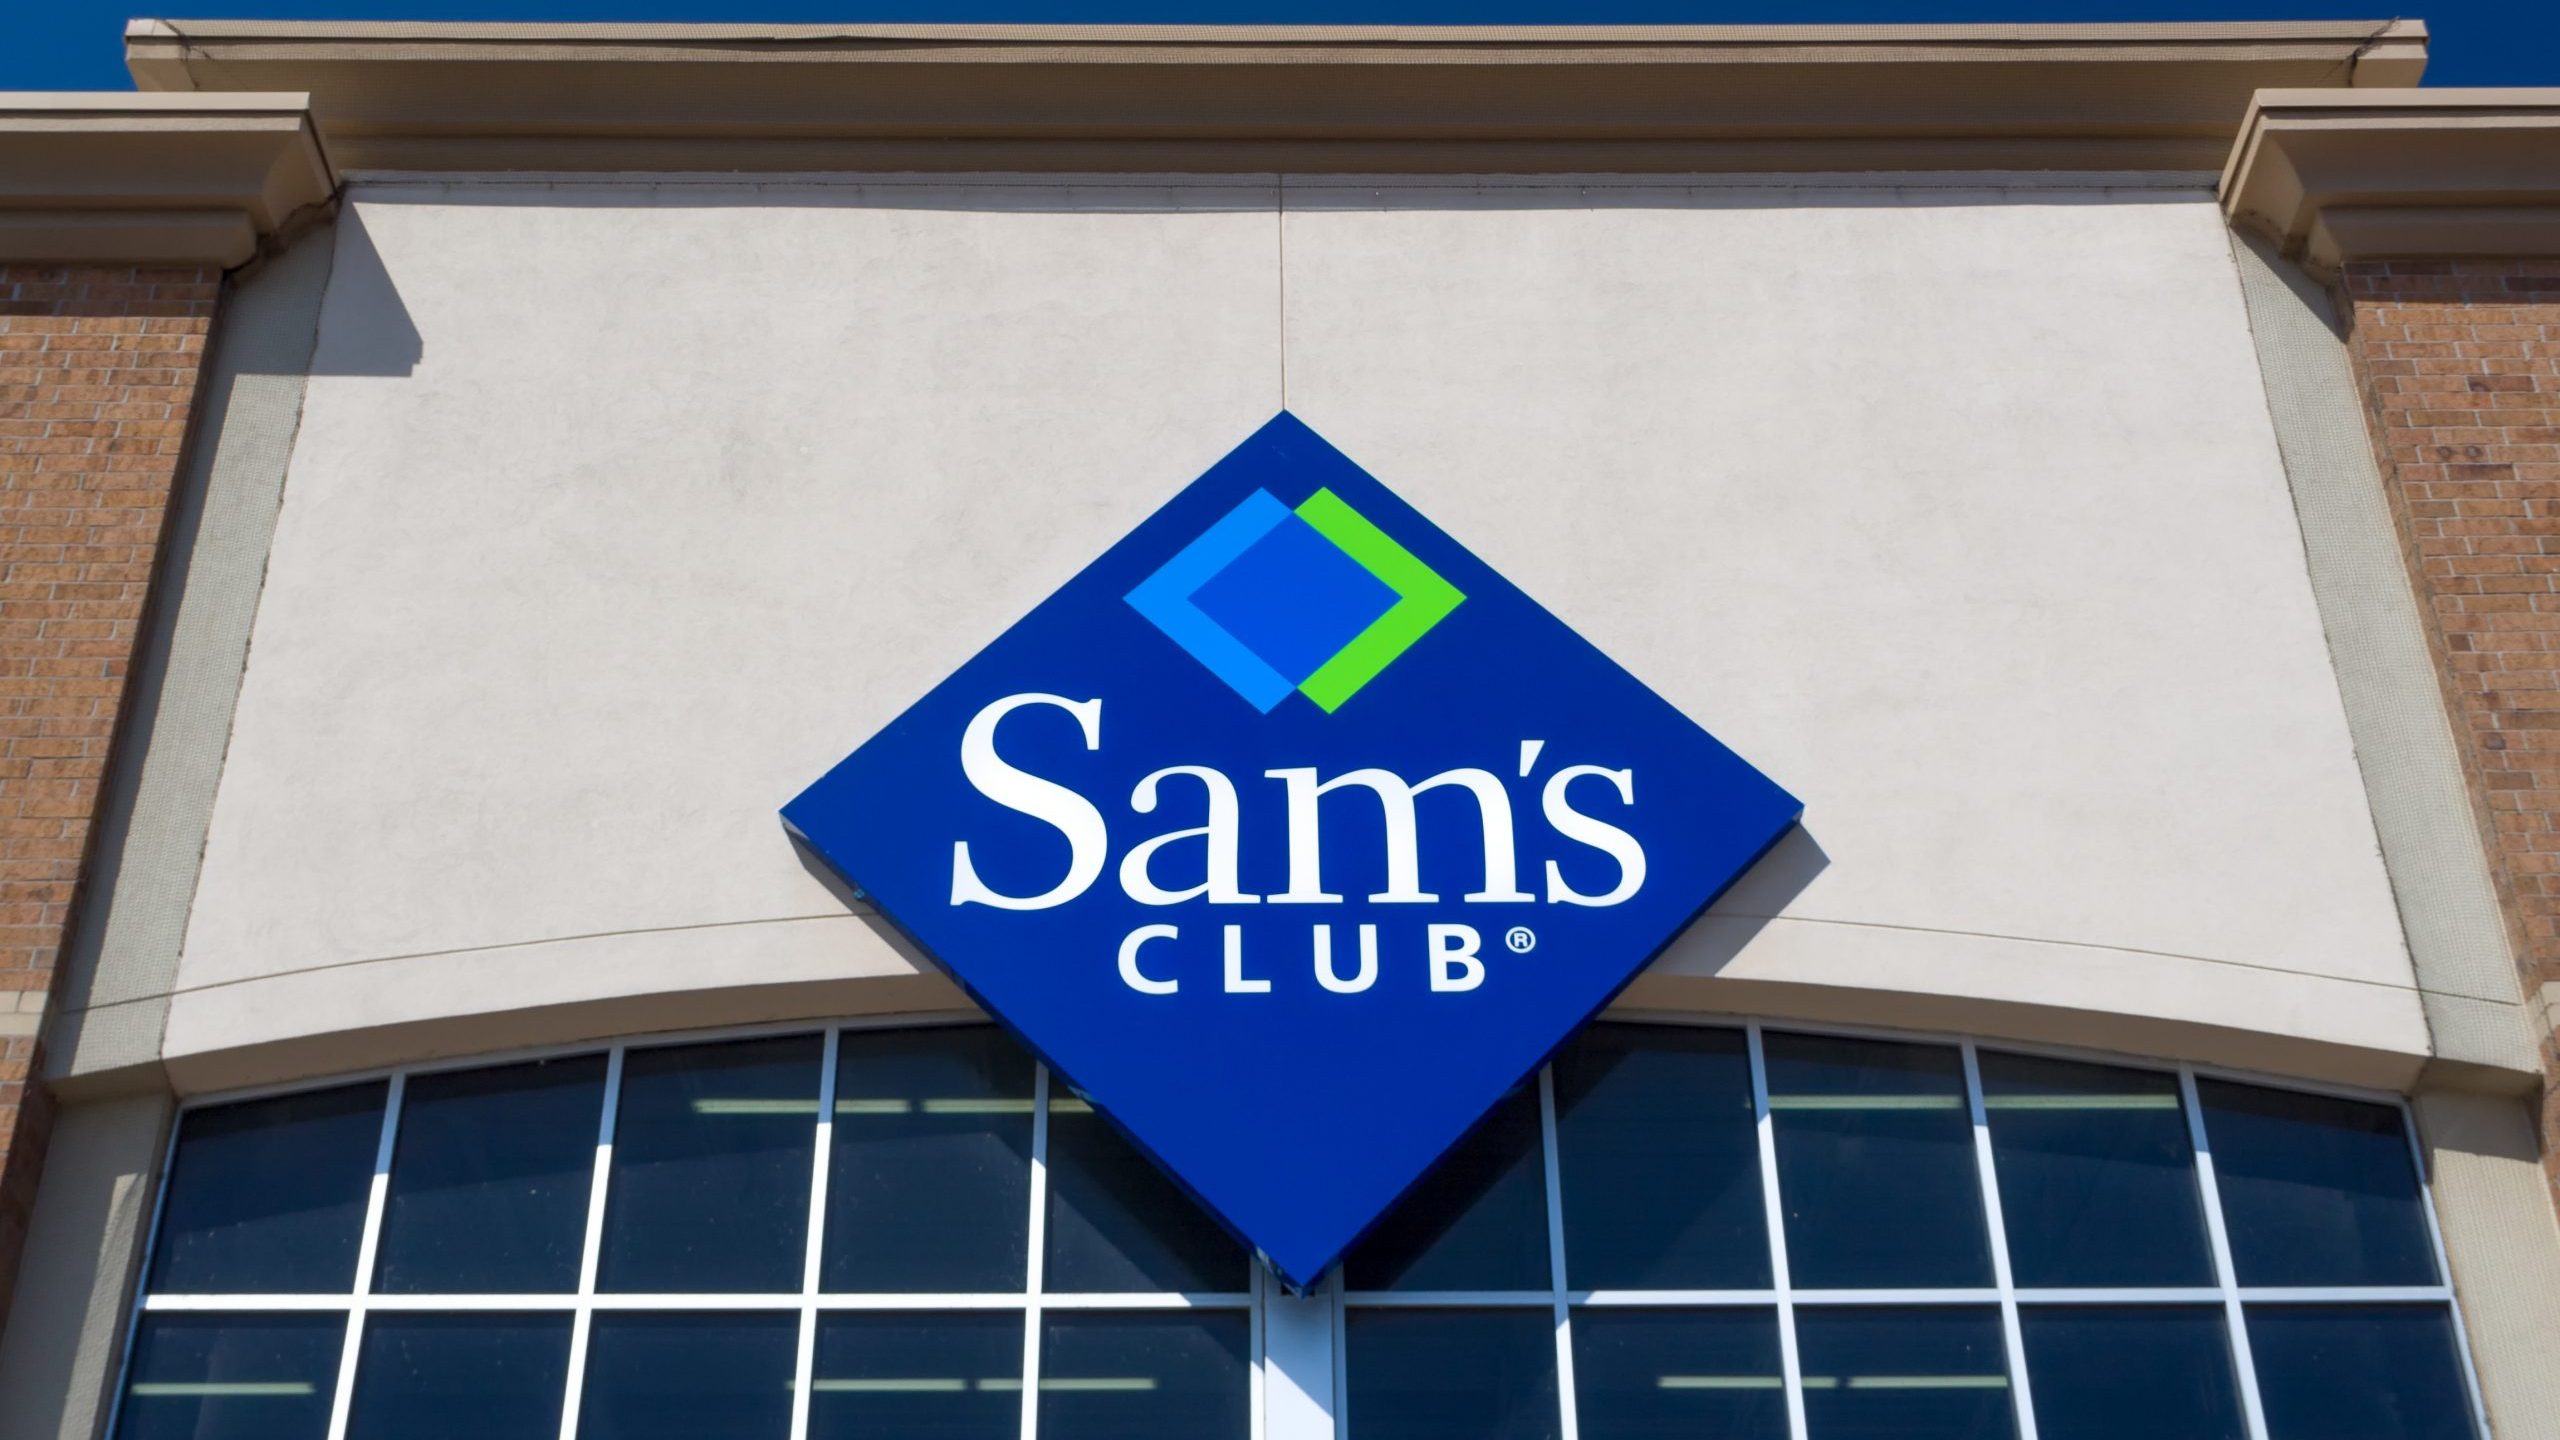 Sam's Club exterior sign